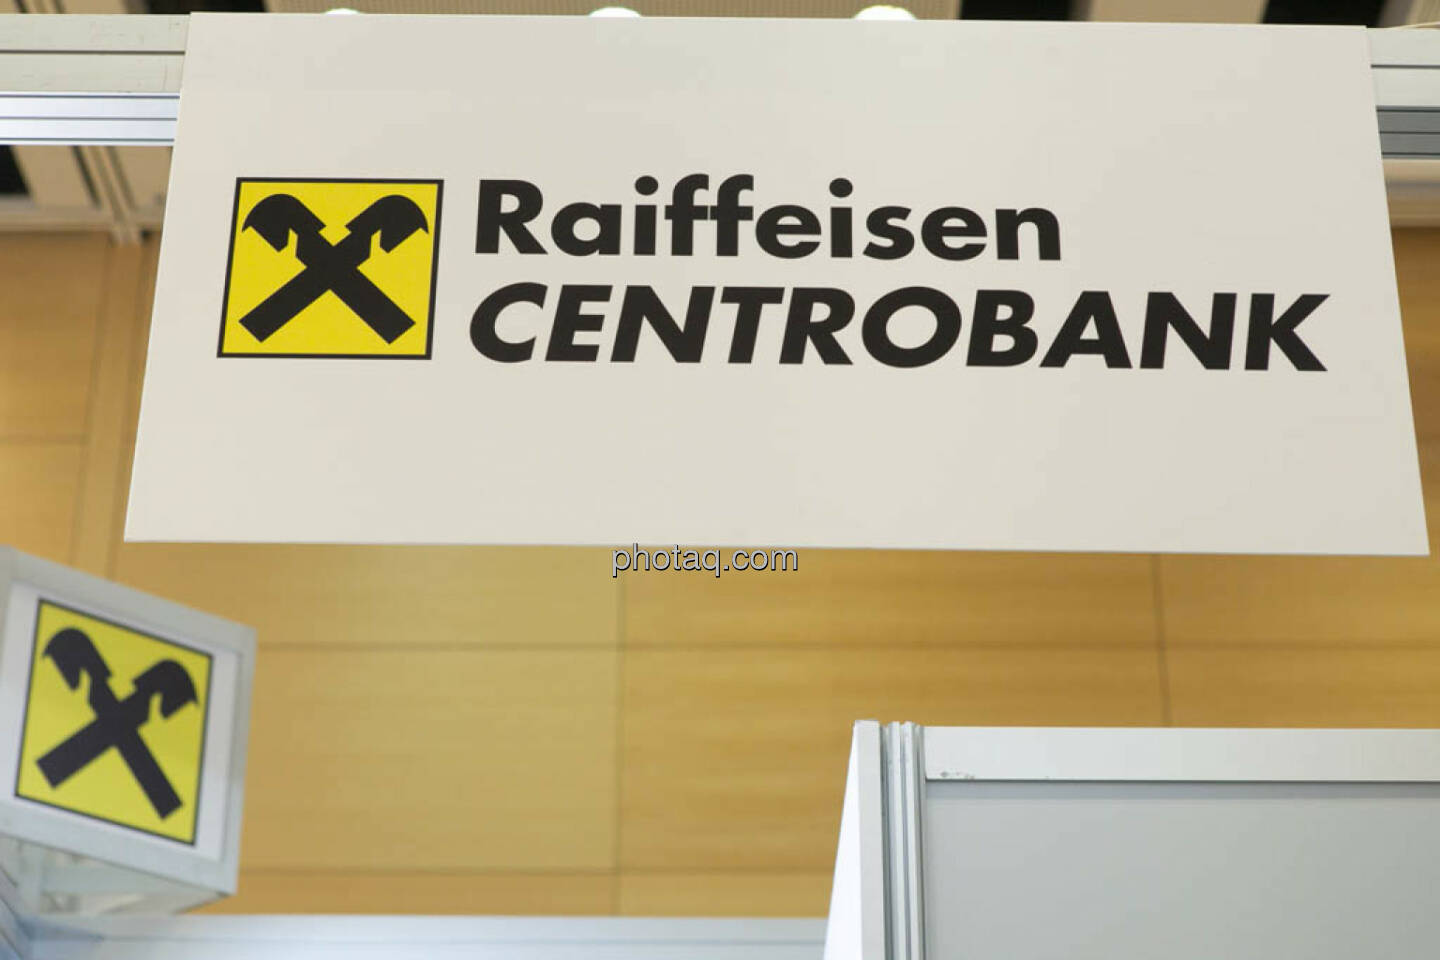 Raiffeisen Centrobank